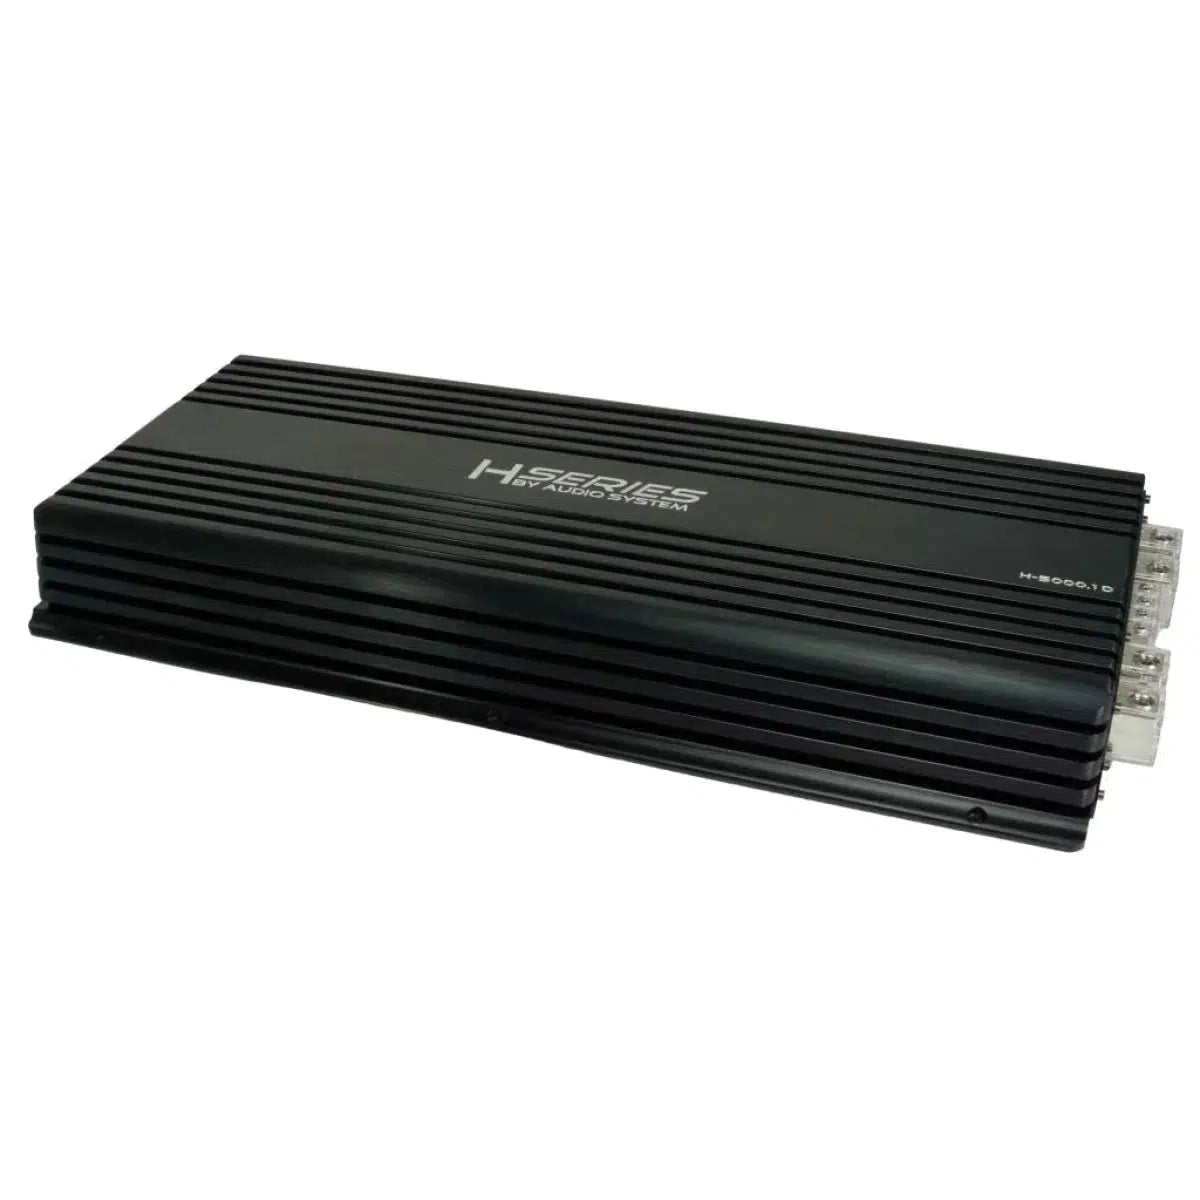 Audio System-Helon H-5000.1 D-1 channel amplifier-Masori.de